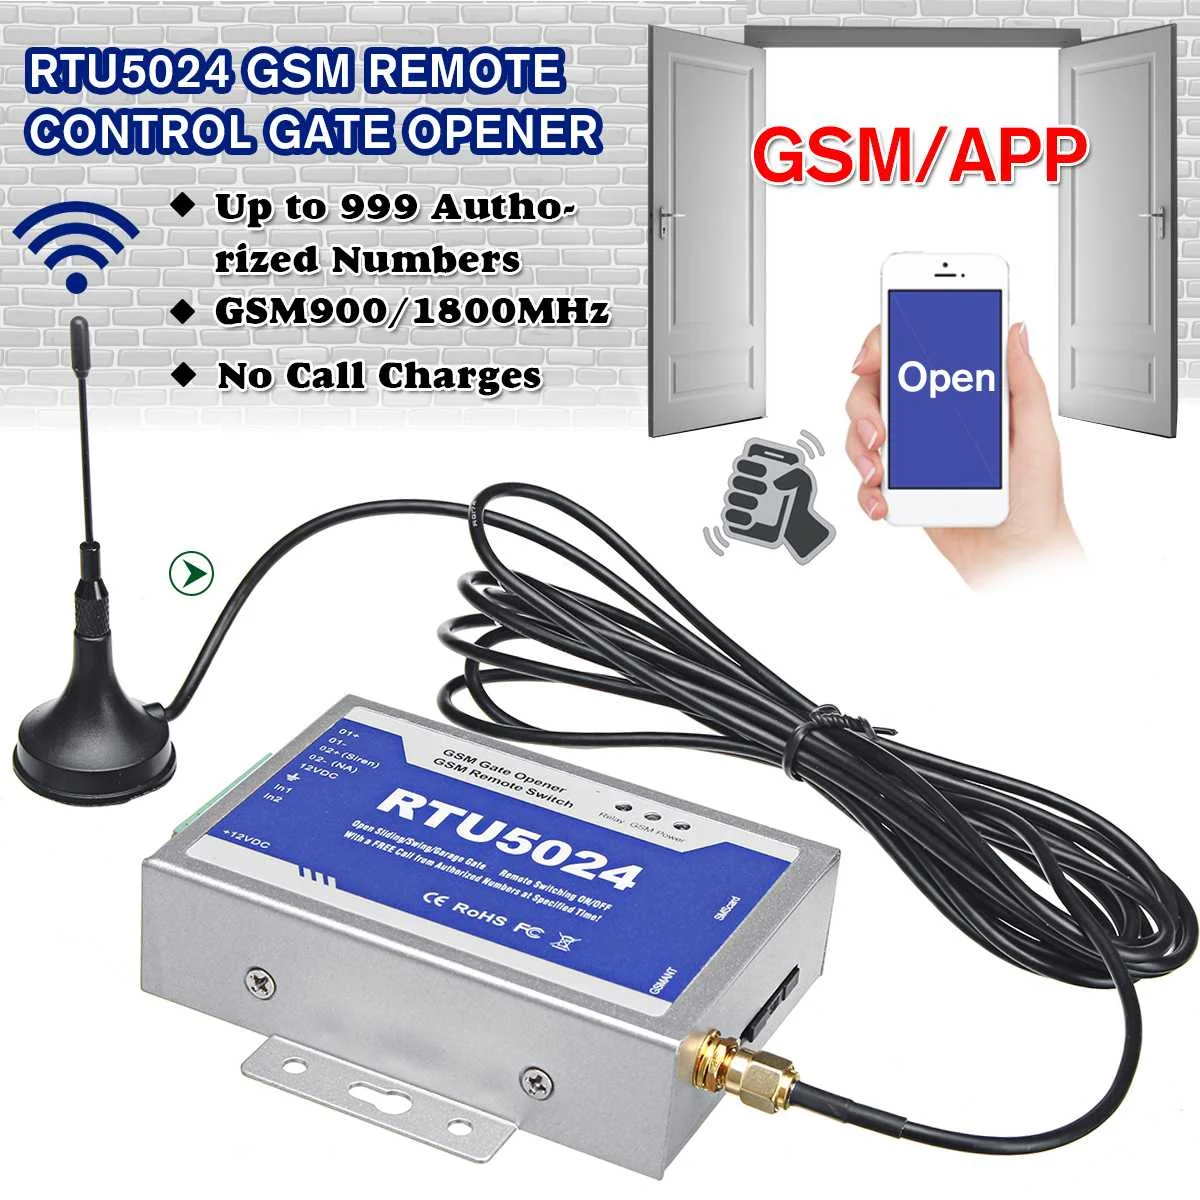 GSM ворот RTU5024 релейный переключатель пульт дистанционного управления беспроводной дверной доступ обновленный комплект для парковочных систем с антенной 300 см